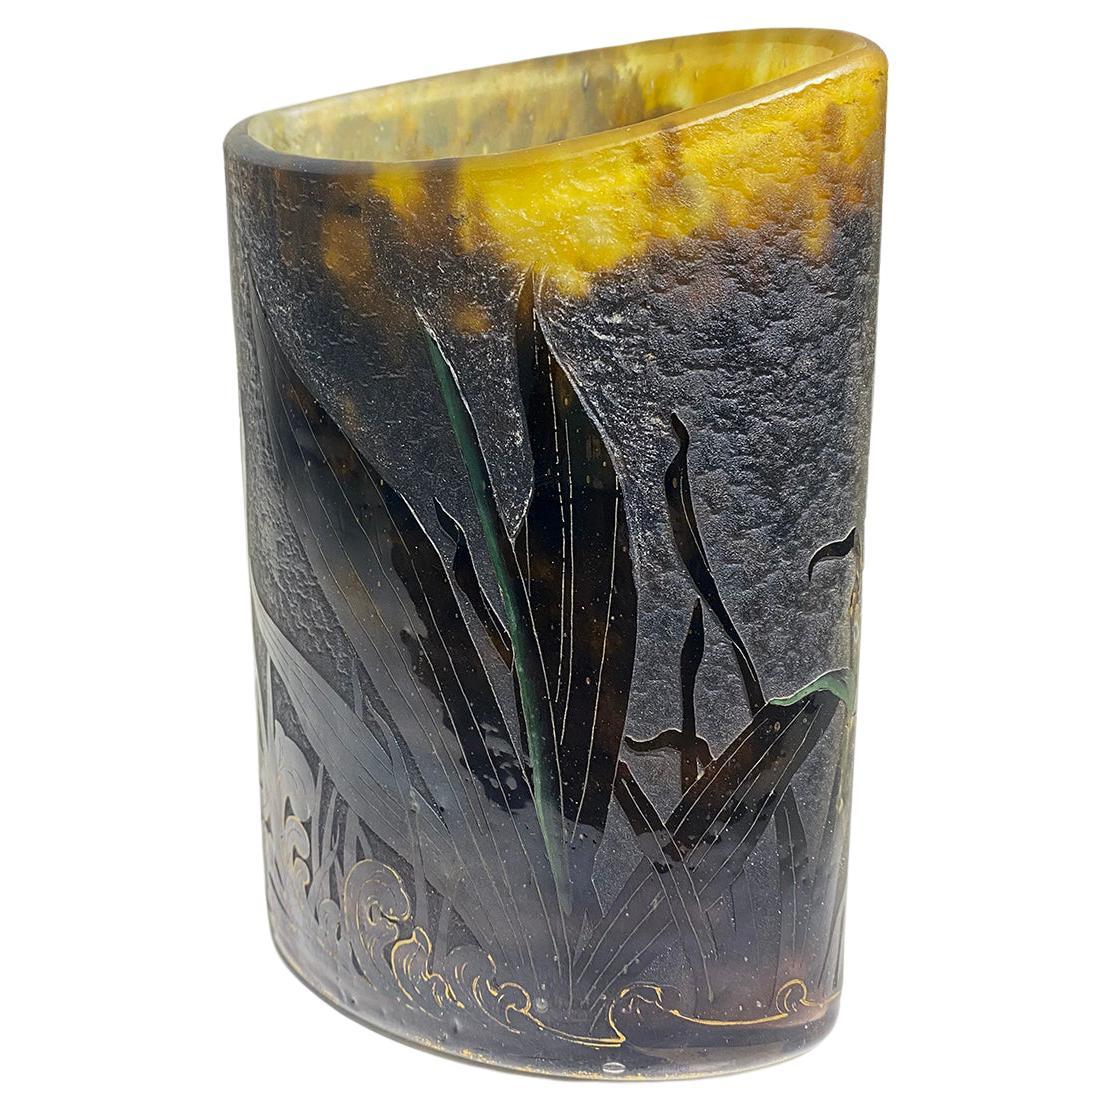 Ce vase en verre camée de style Art nouveau français par Daum Nancy présente des feuilles avec des bords dorés et une toile d'araignée, avec un bord doré de la base et signé en doré Daum Nancy avec une croix de Lorraine, vers 1900-1910.

L'attention